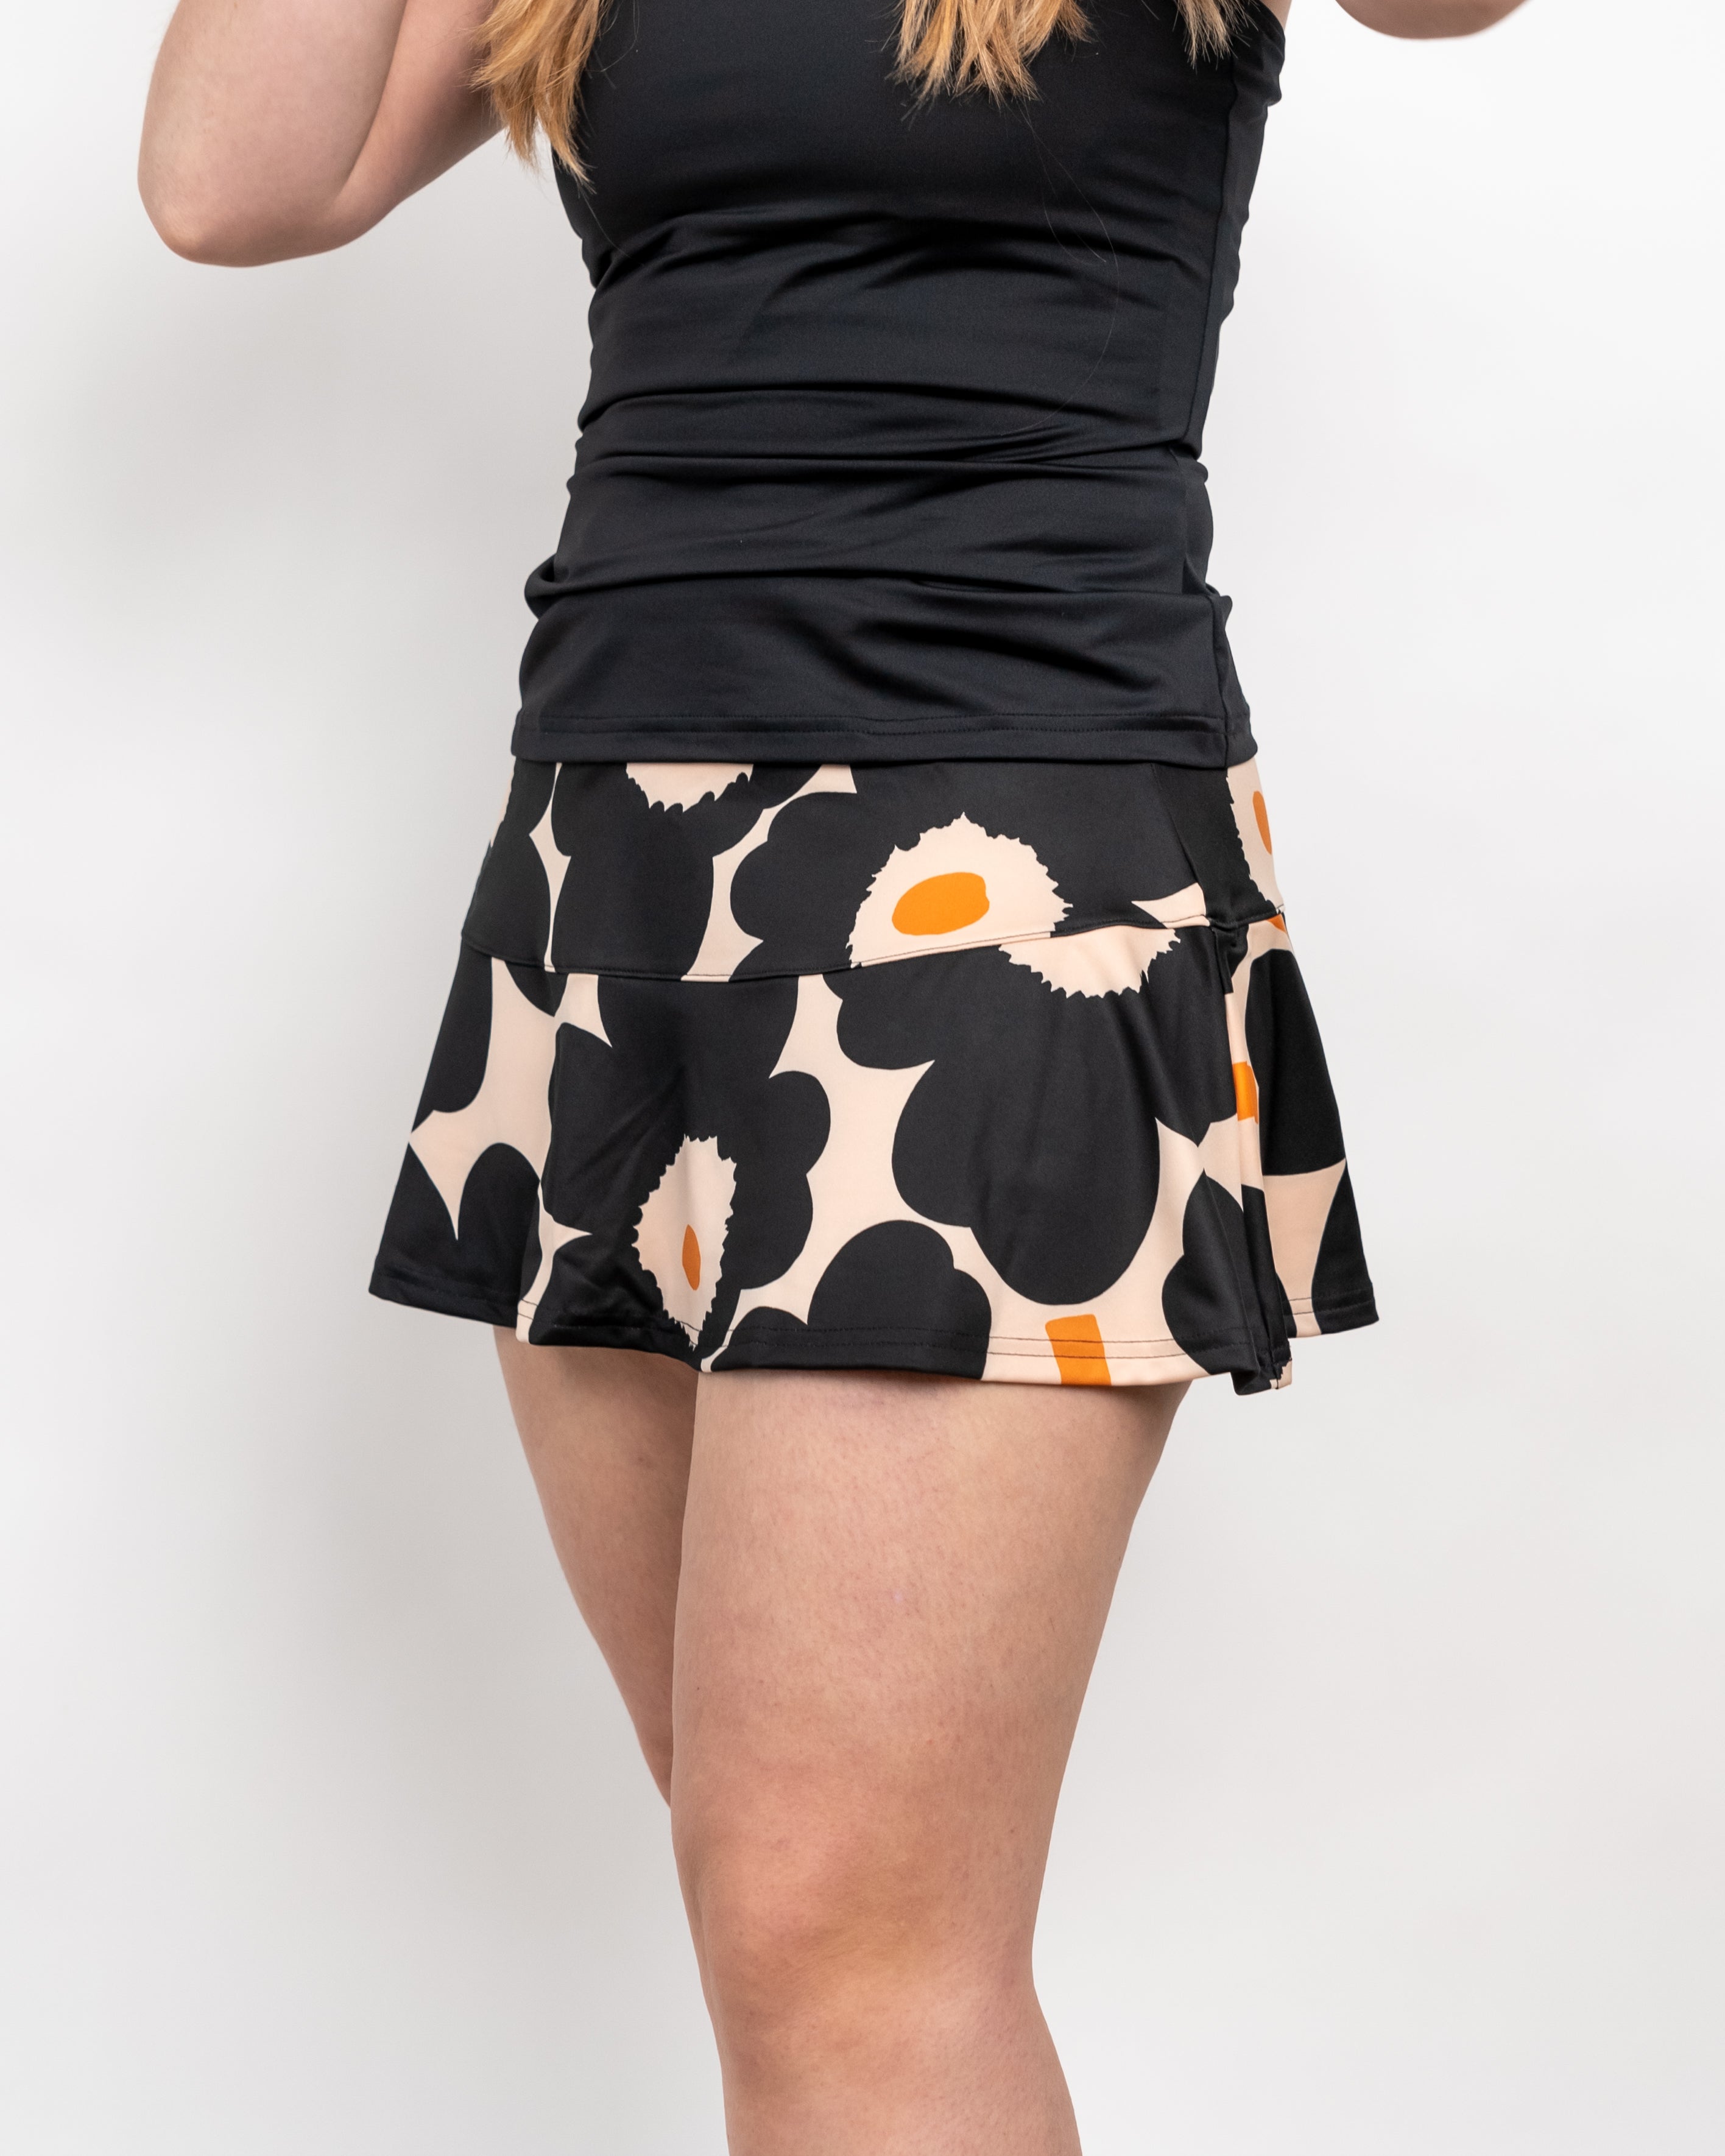 Adidas Women's Marimekko Match Skirt